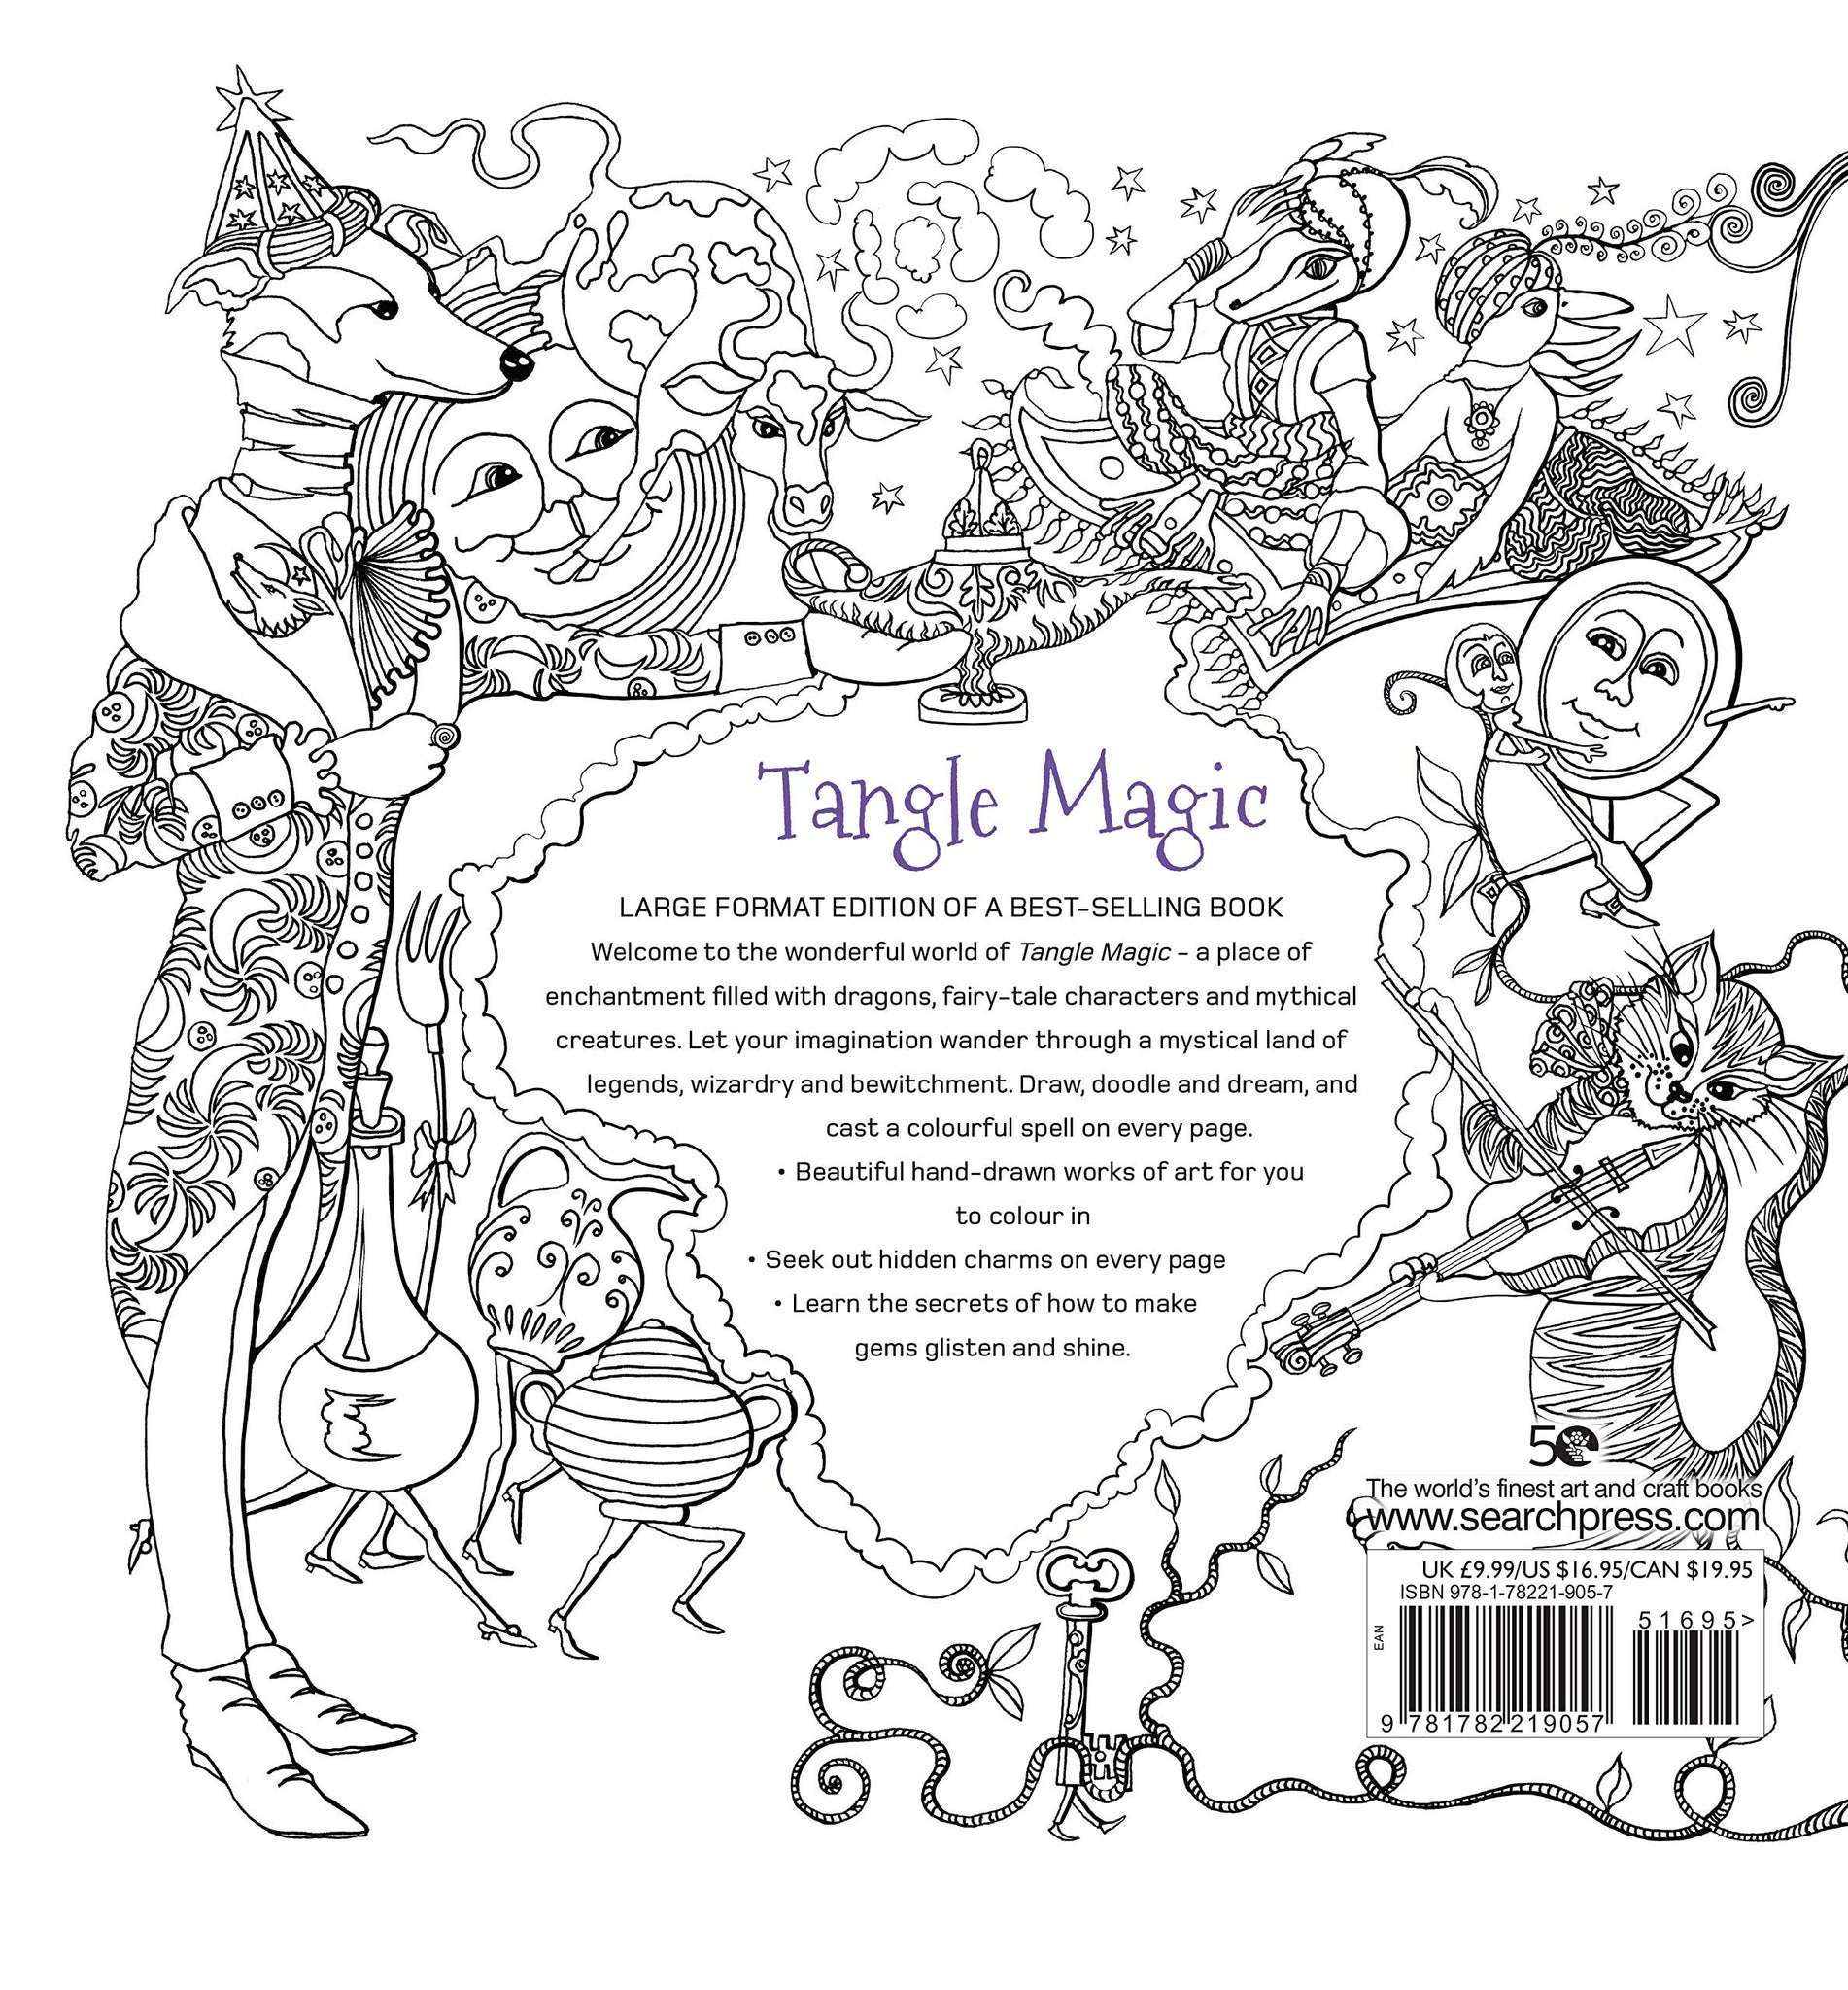 Cerca Press Books - Libro da colorare Tangle Magic - Grande Formato